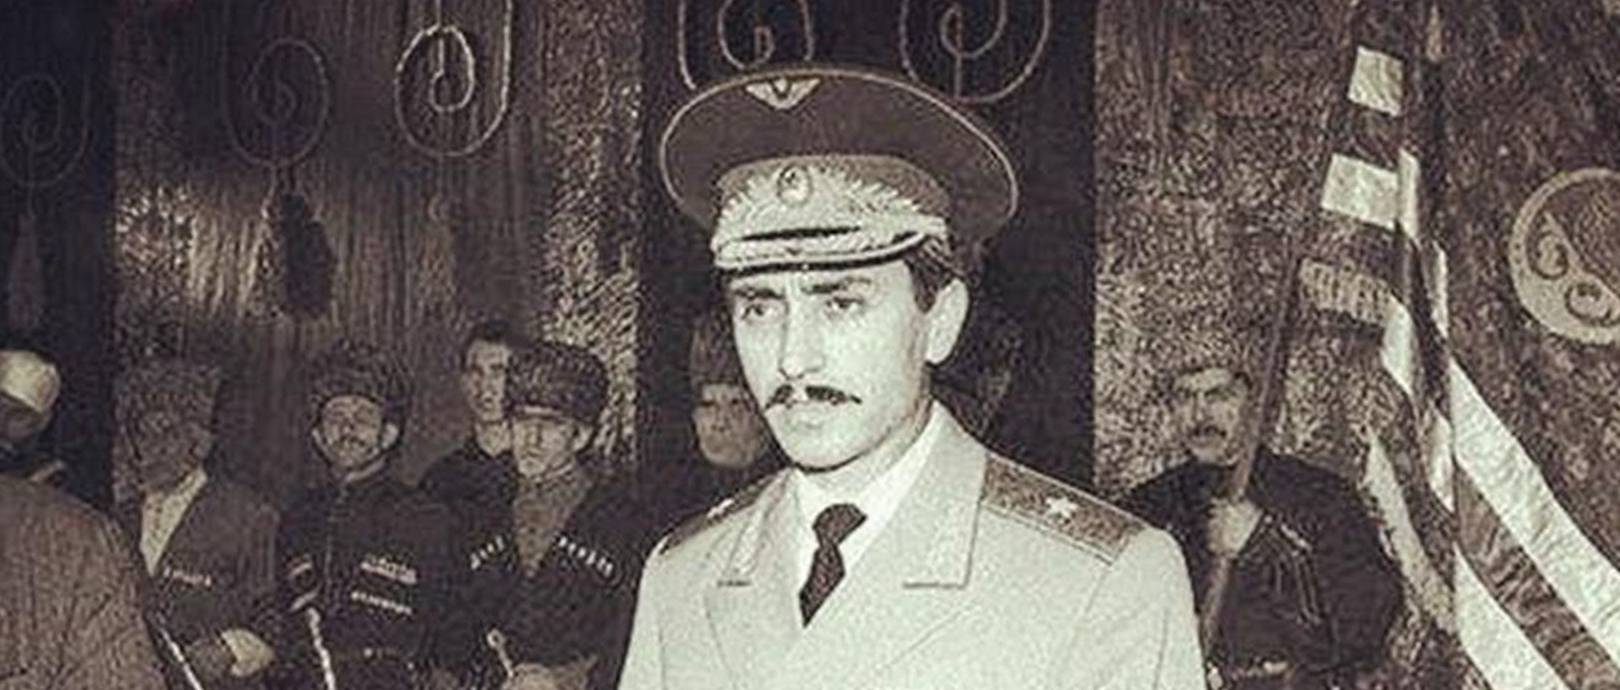 历史上的今天,车臣总统杜达耶夫被炸死,结束了他的双面人生.